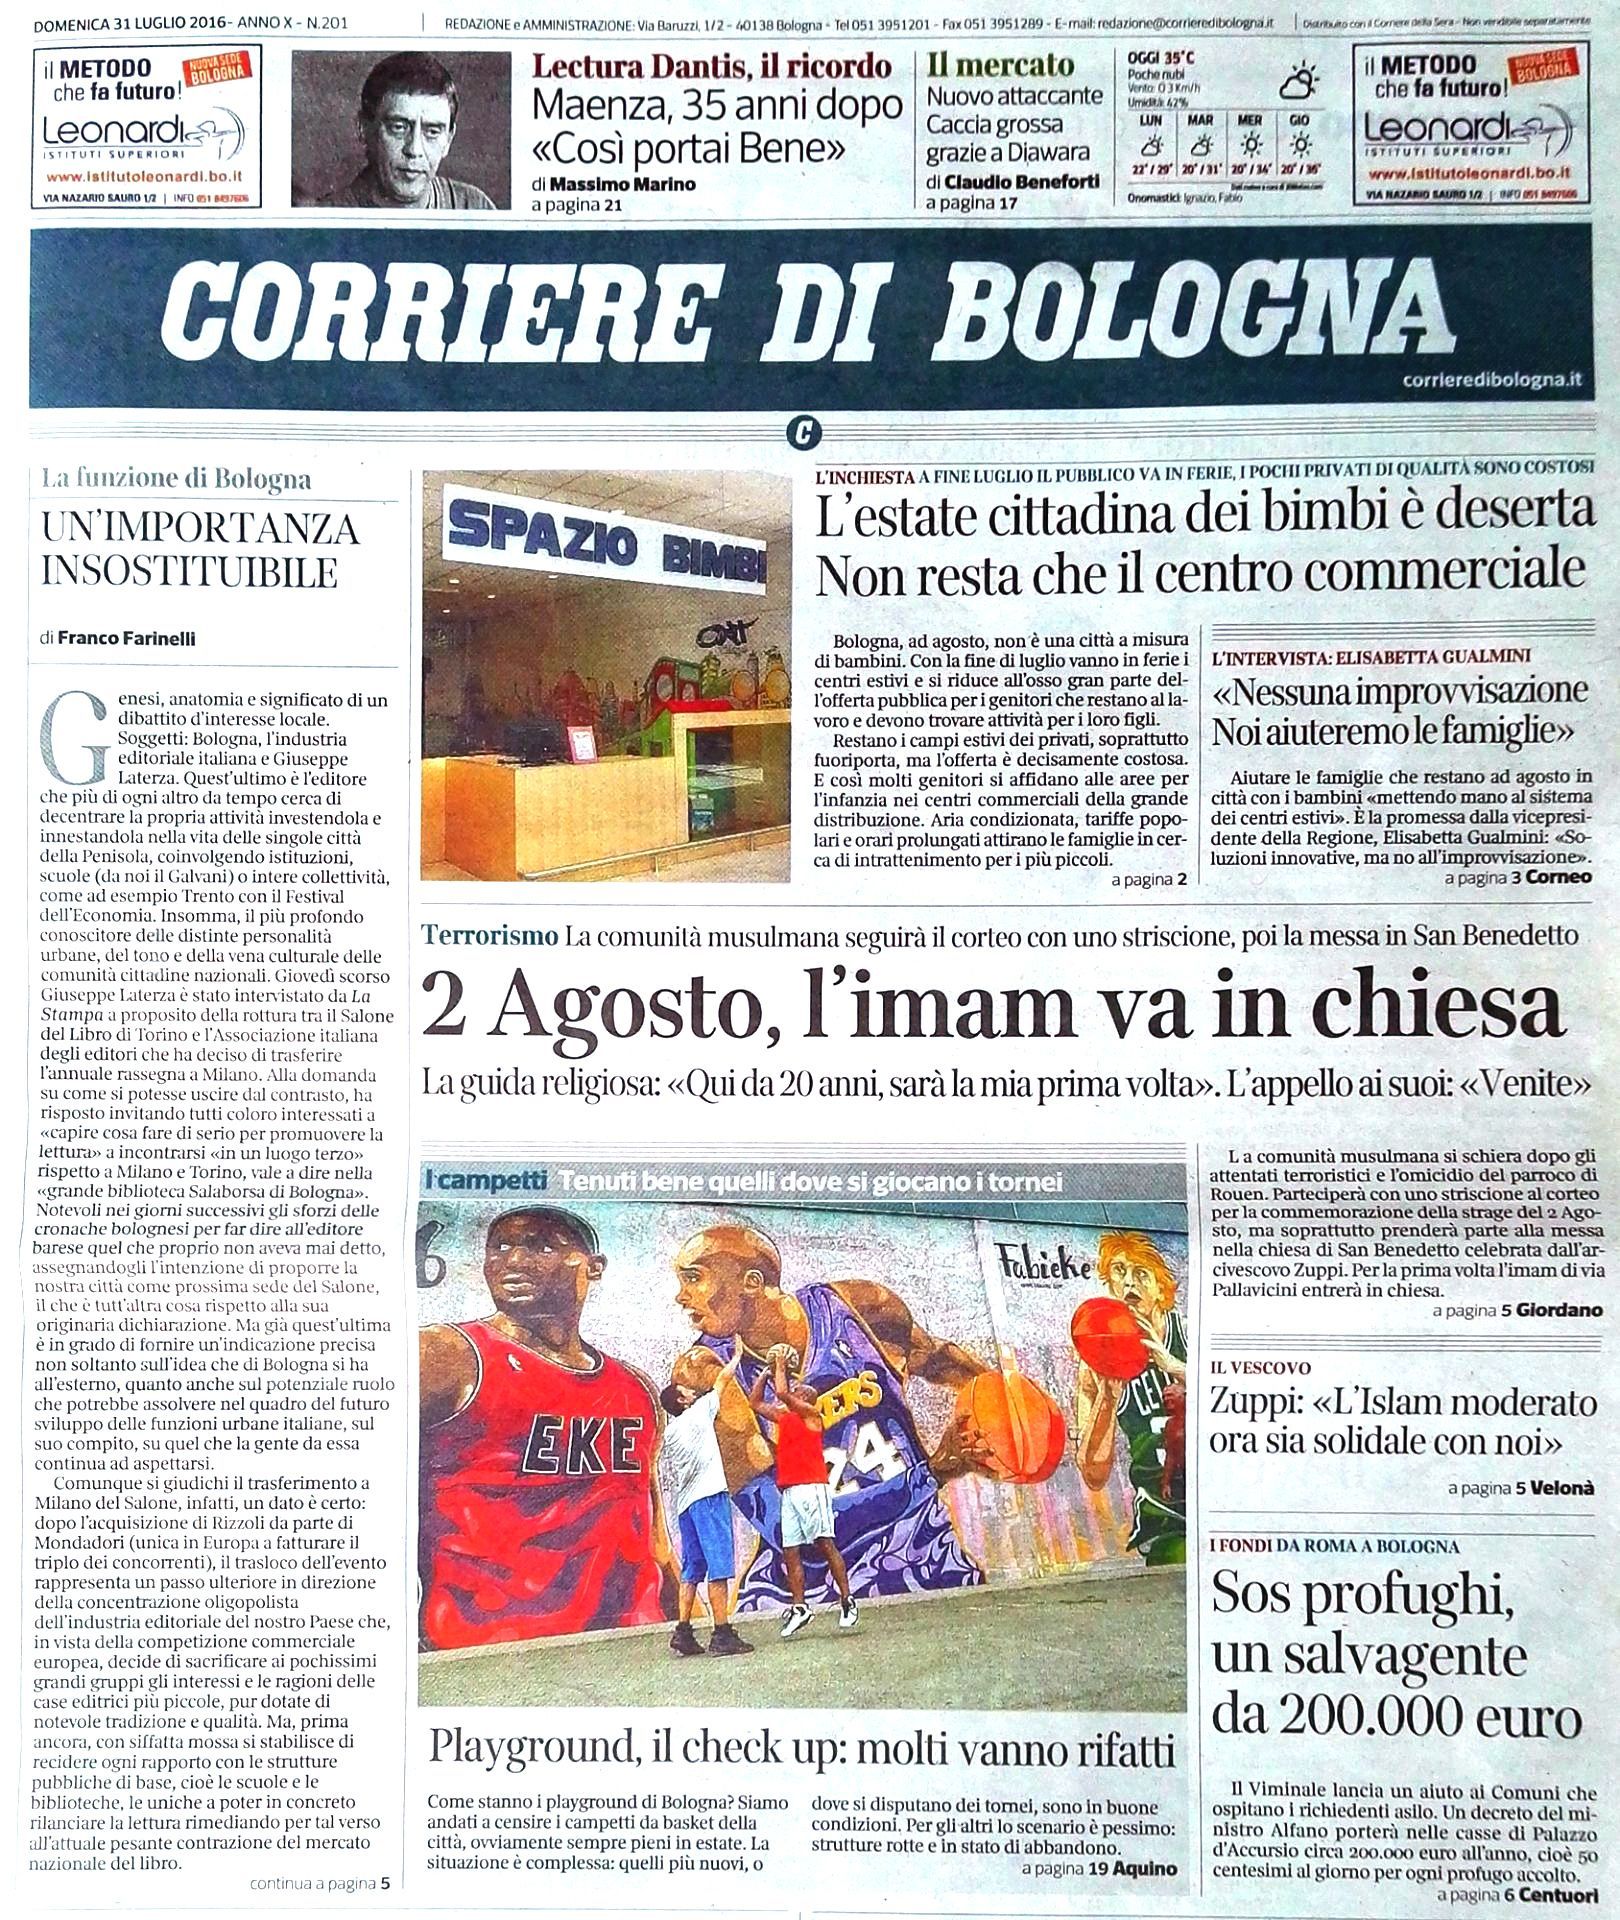 Corriere di Bologna - Newspaper